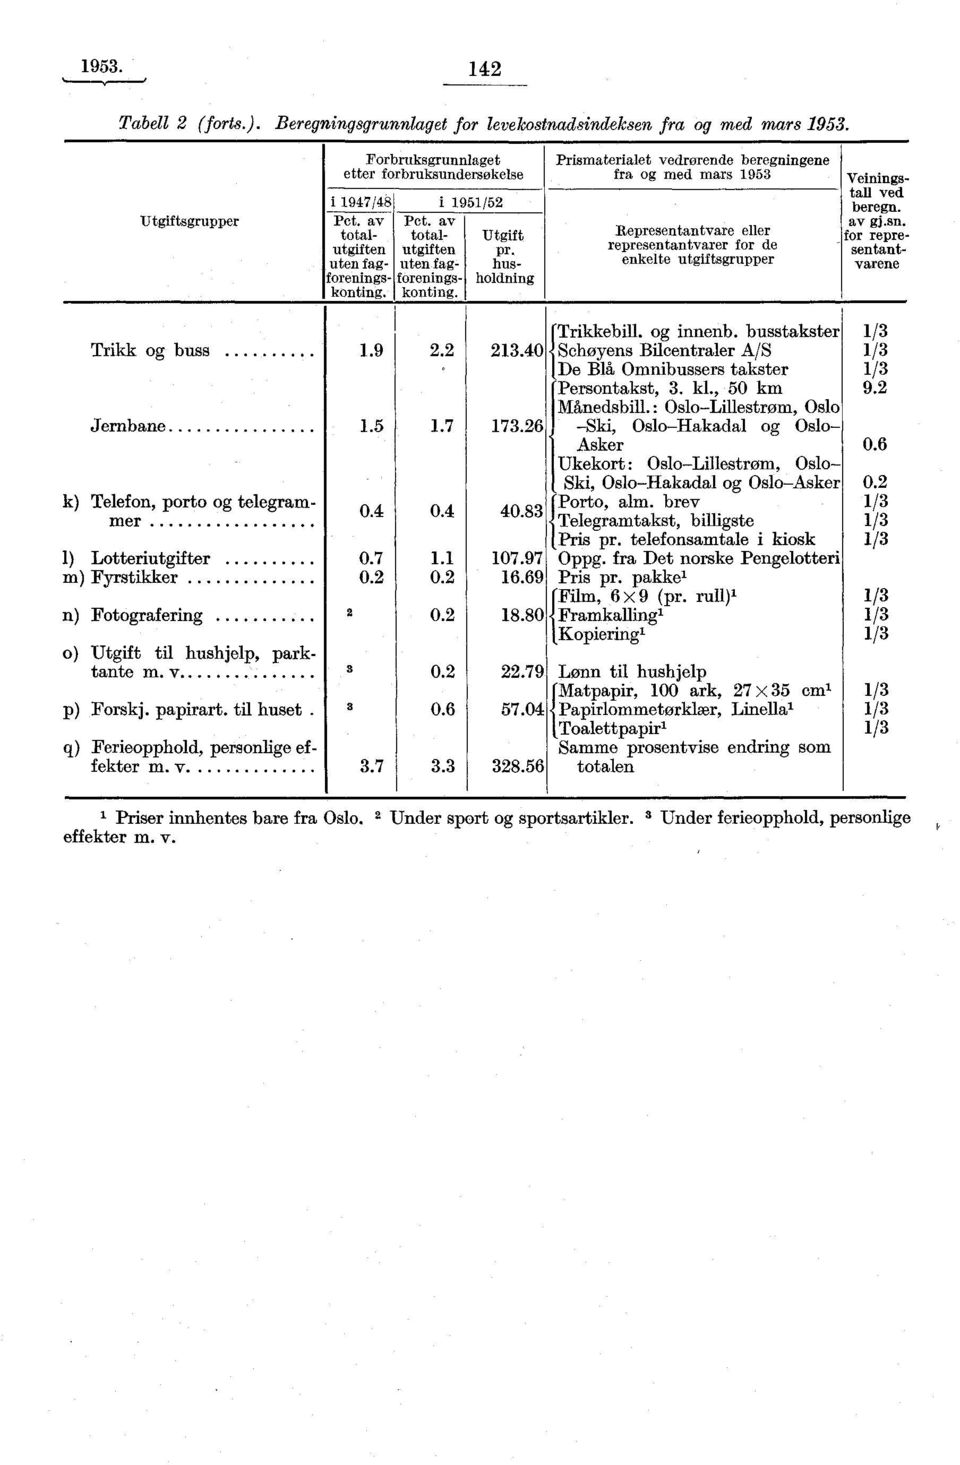 konting. Prismaterialet vedrørende beregningene fra og med mars 1953 Representantvare eller representantvarer for de enkelte utgiftsgrupper Veiningstall ved beregn. av gj.sn.